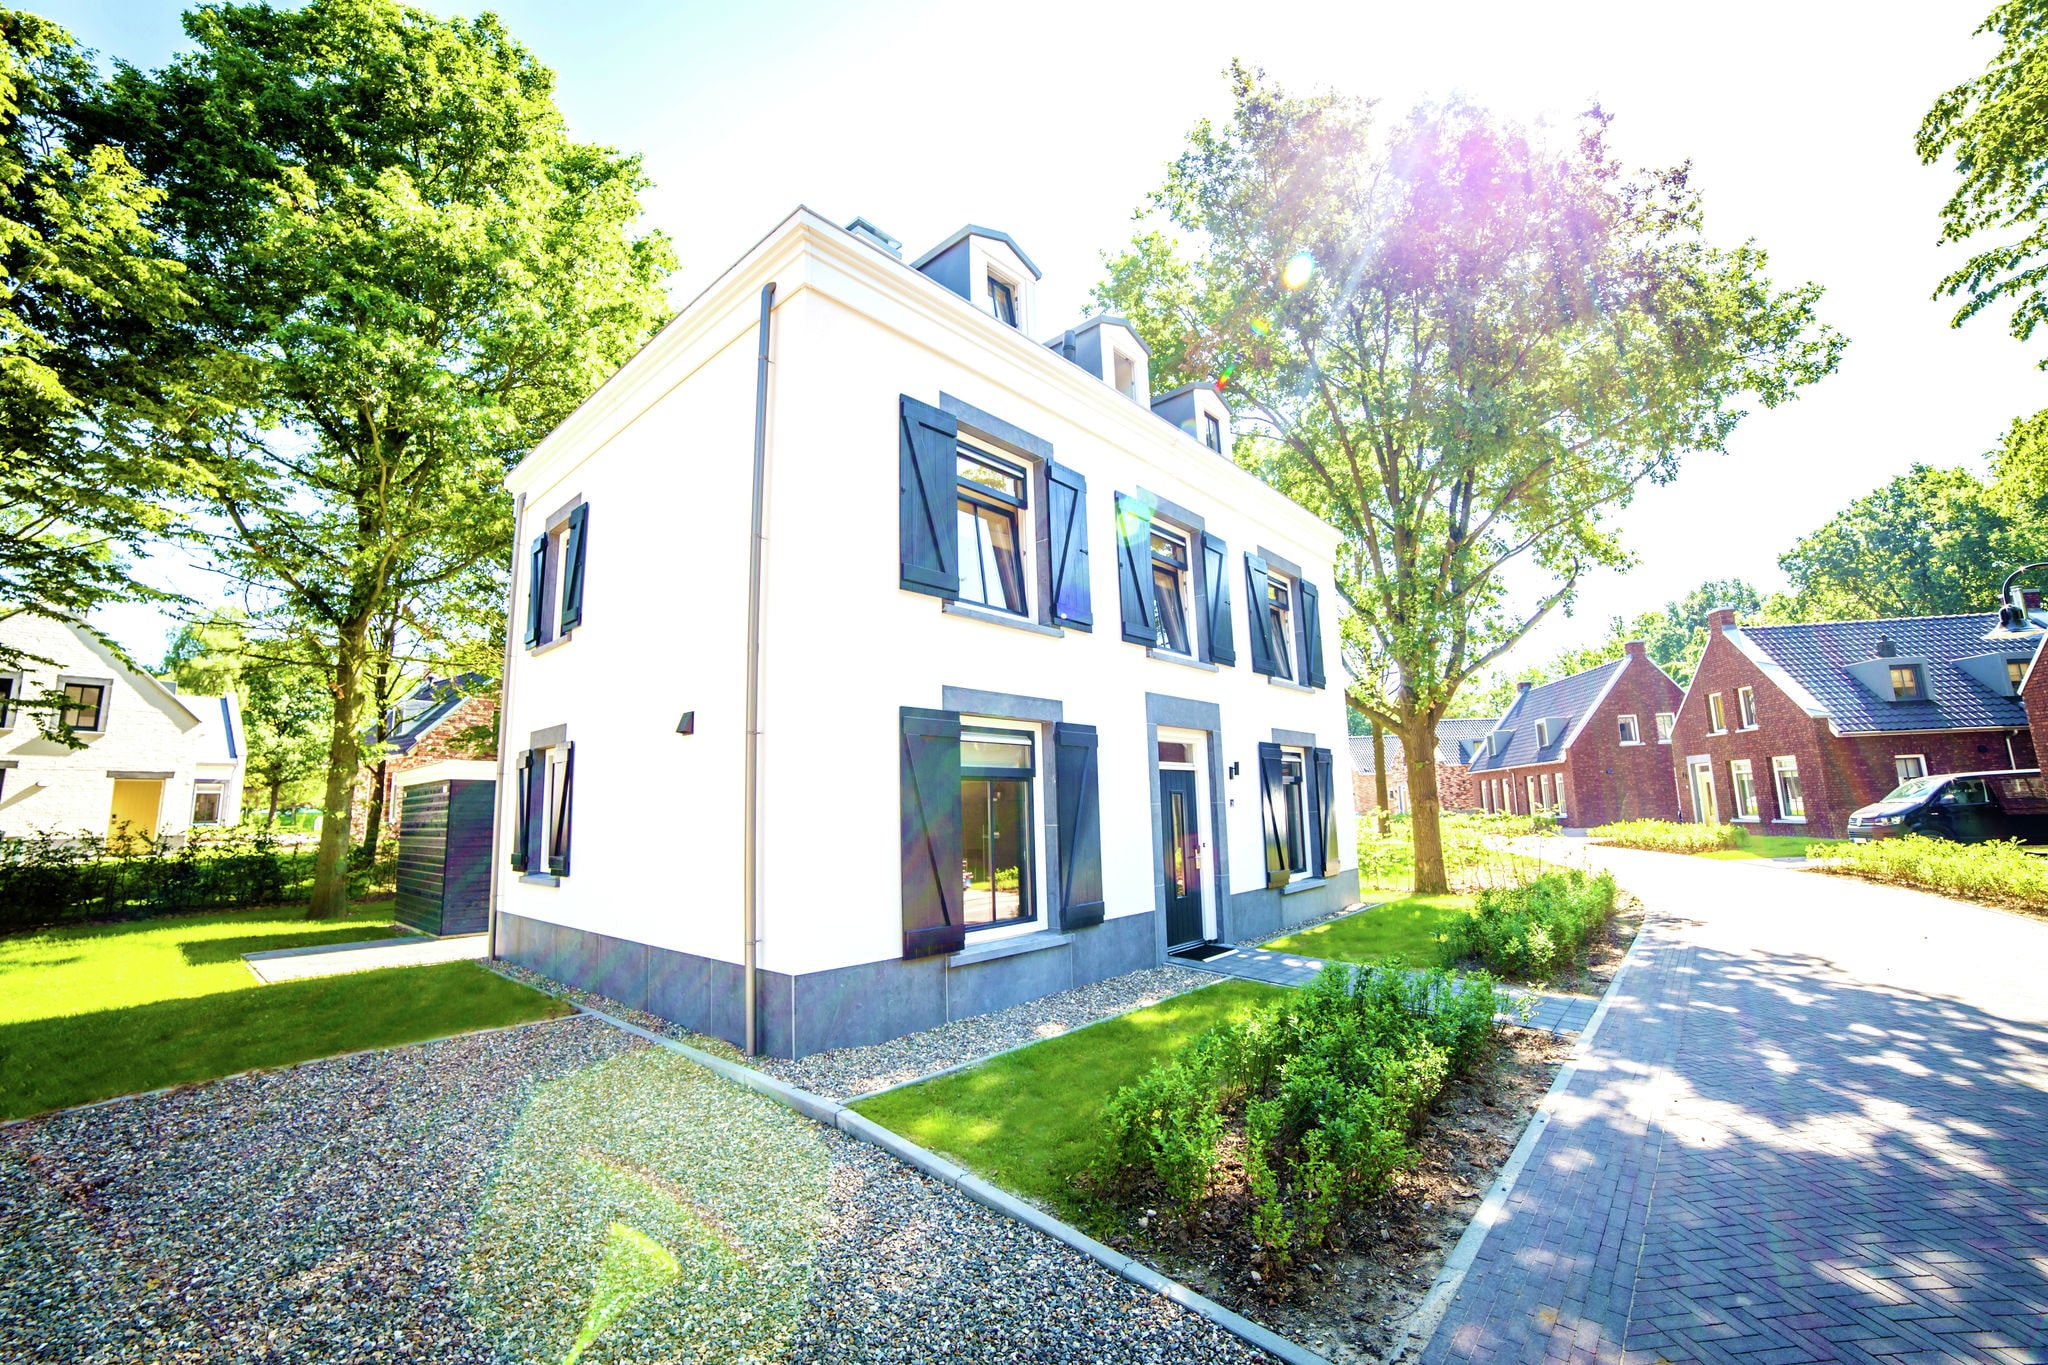 Villa avec bain à bulles, à 4 km de Maastricht